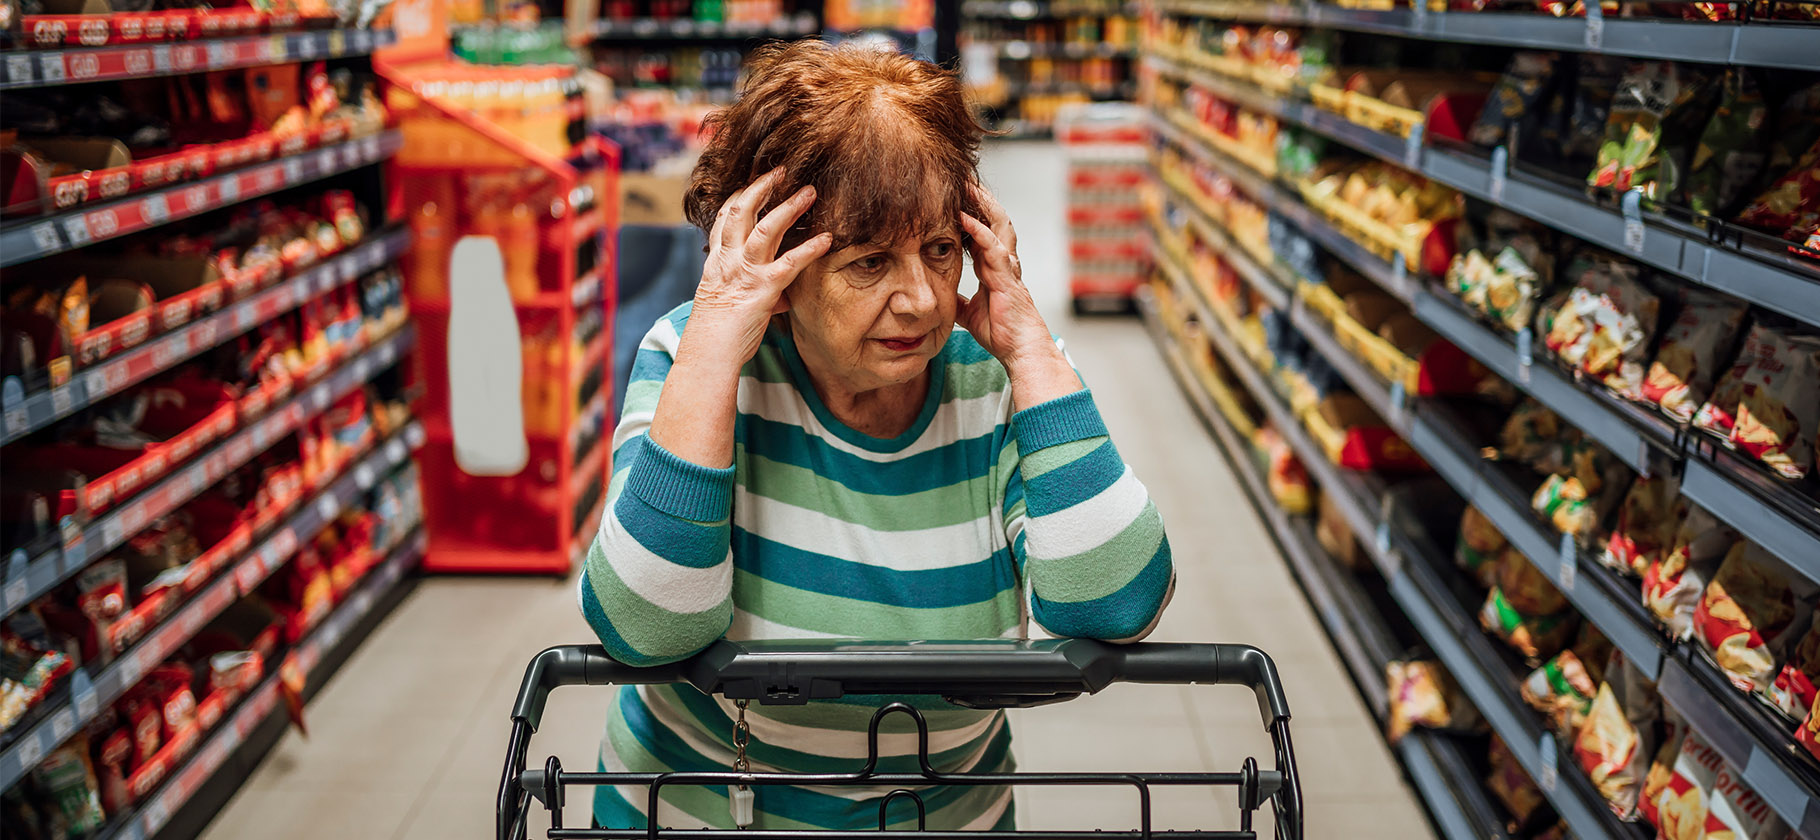 Пищевое отравление и искалеченное лицо: 7 походов в супермаркет, которые закончились судом